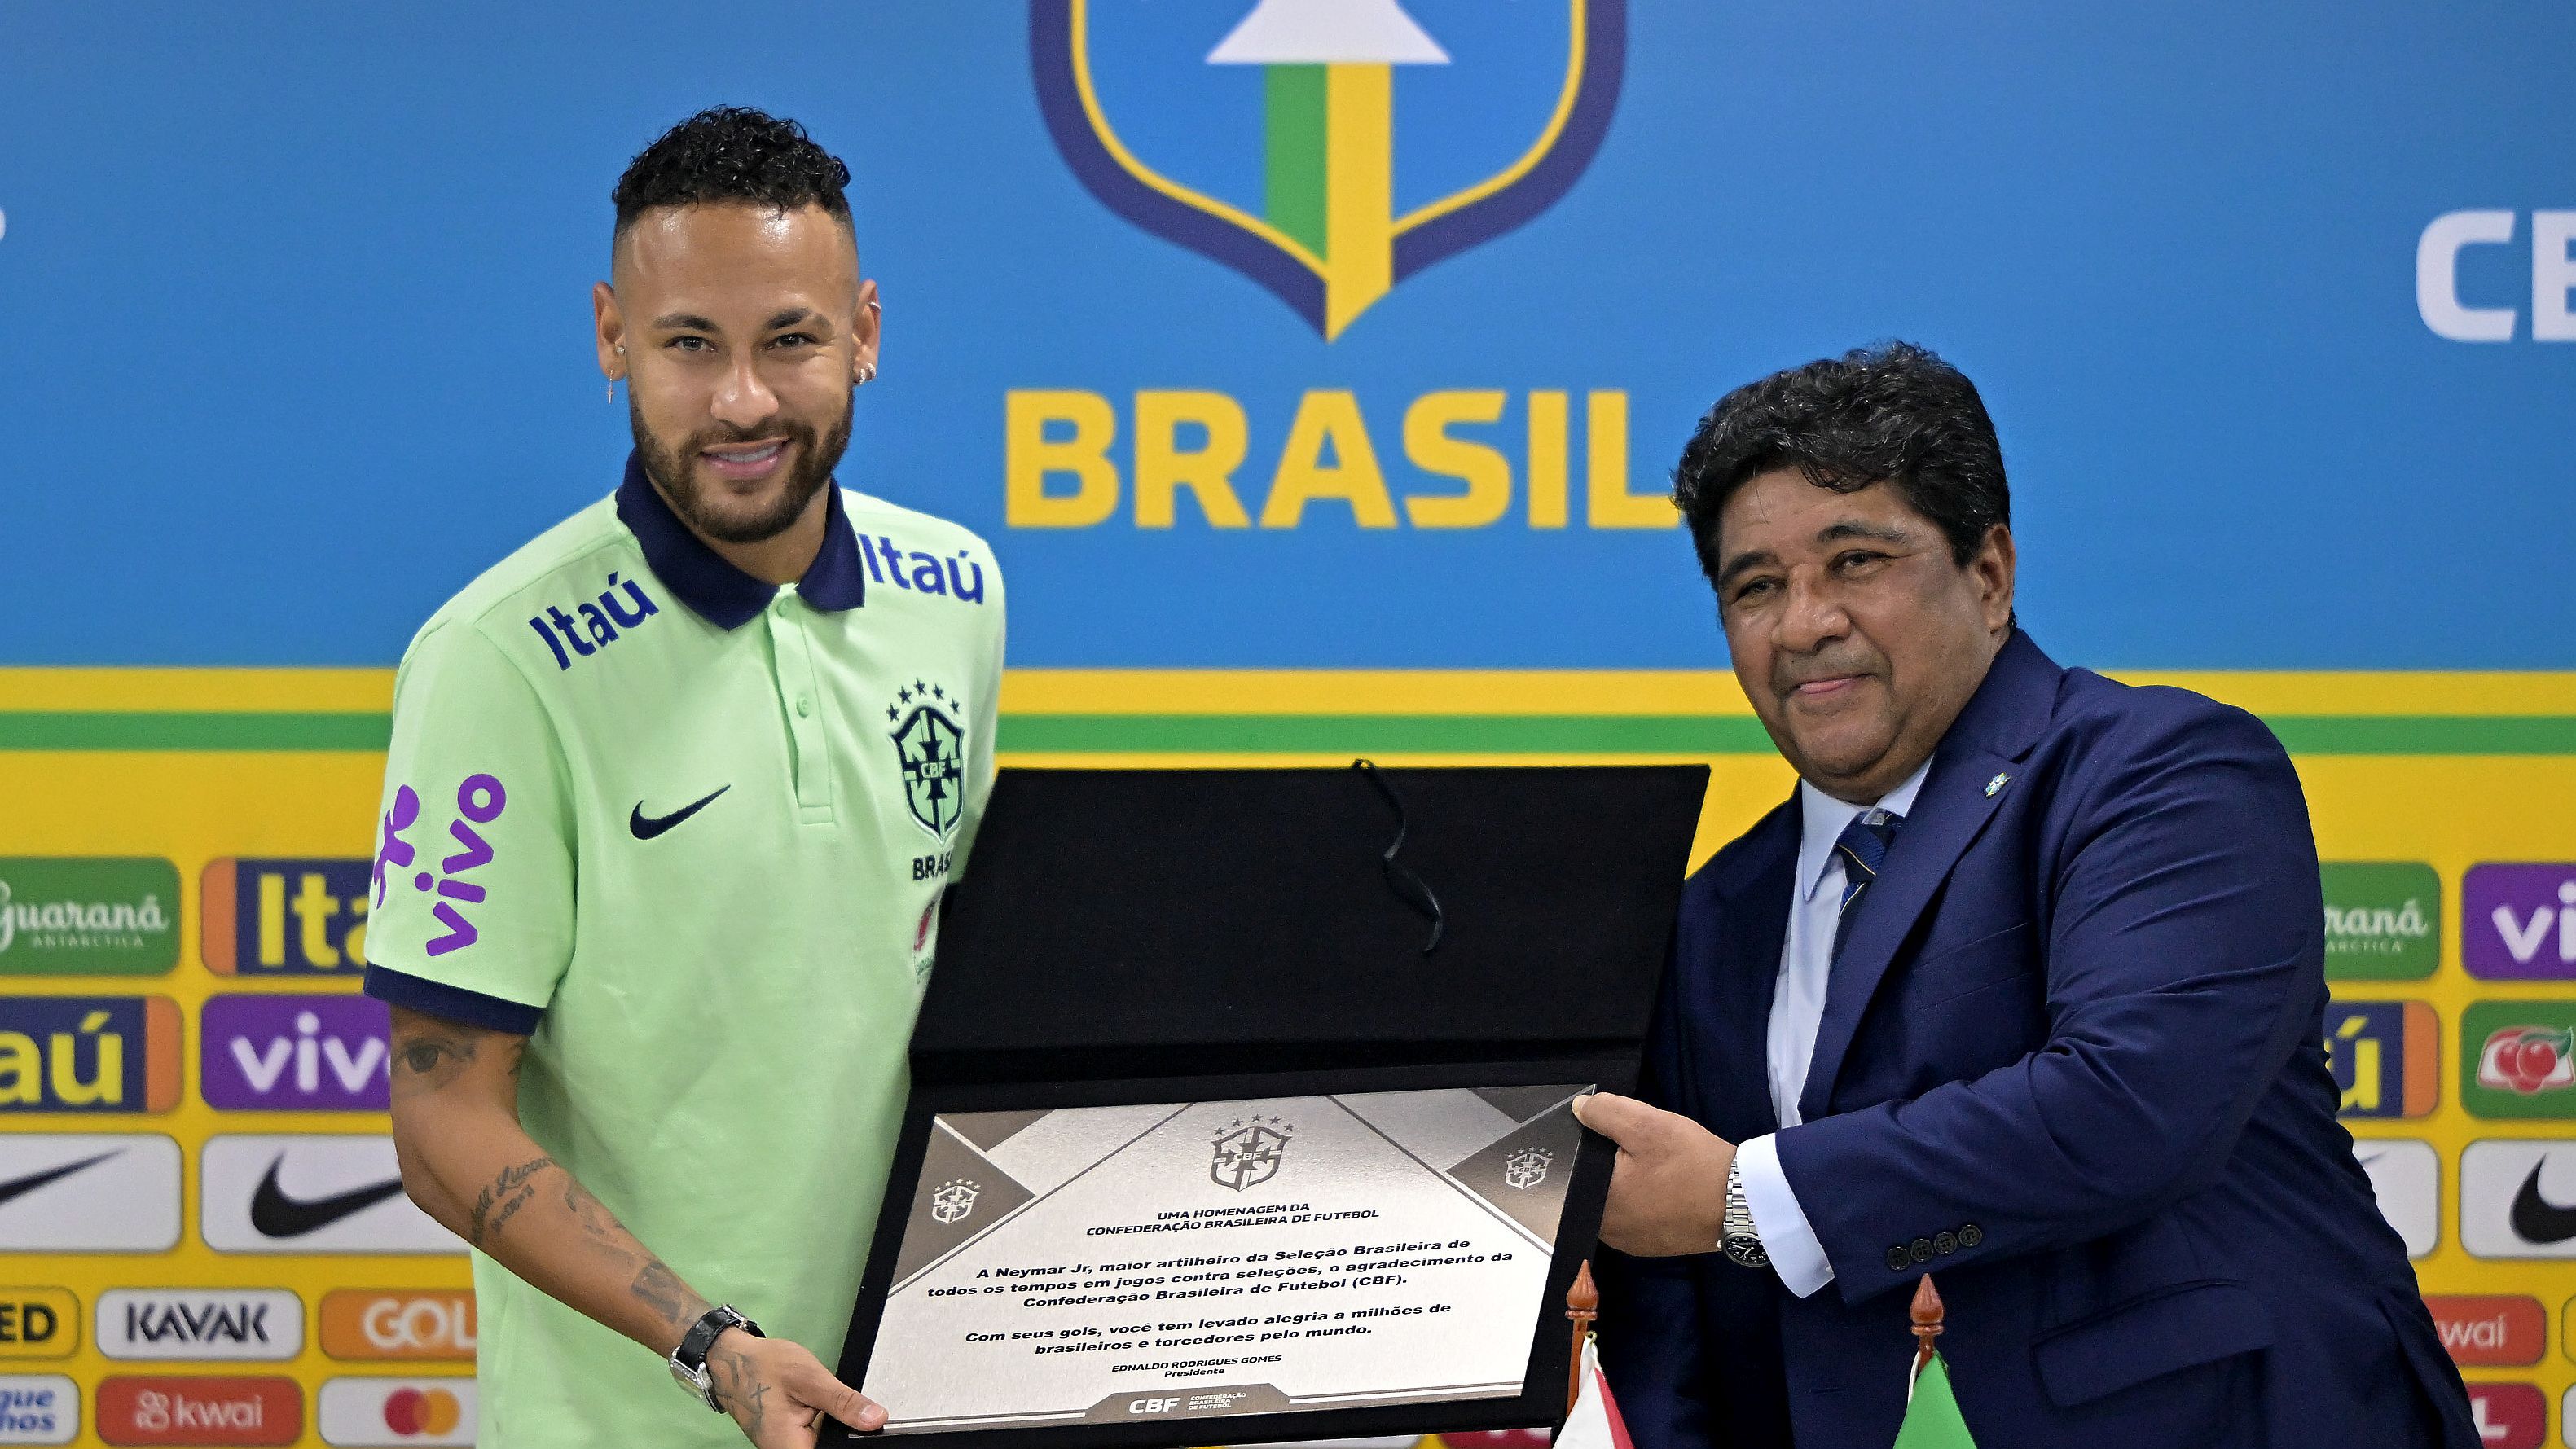 Neymar megdöntötte Pelé csúcsát, megismétlődik a 2021-es US Open-döntő – délelőtti hírösszefoglaló